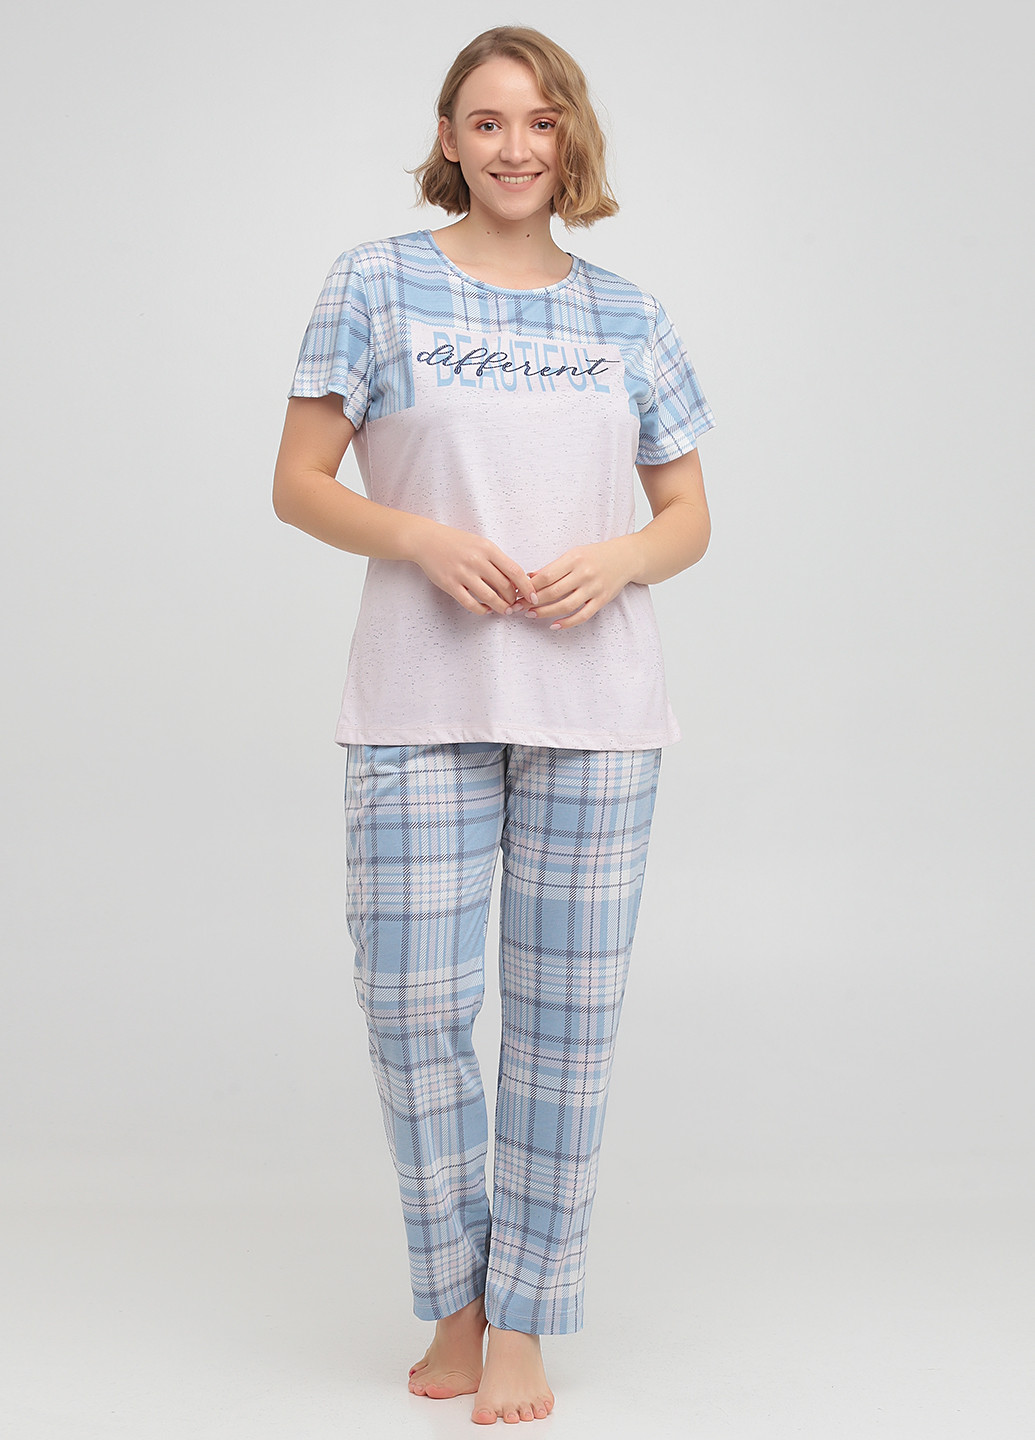 Голубая всесезон пижама (футболка, брюки) футболка + брюки Cotpark